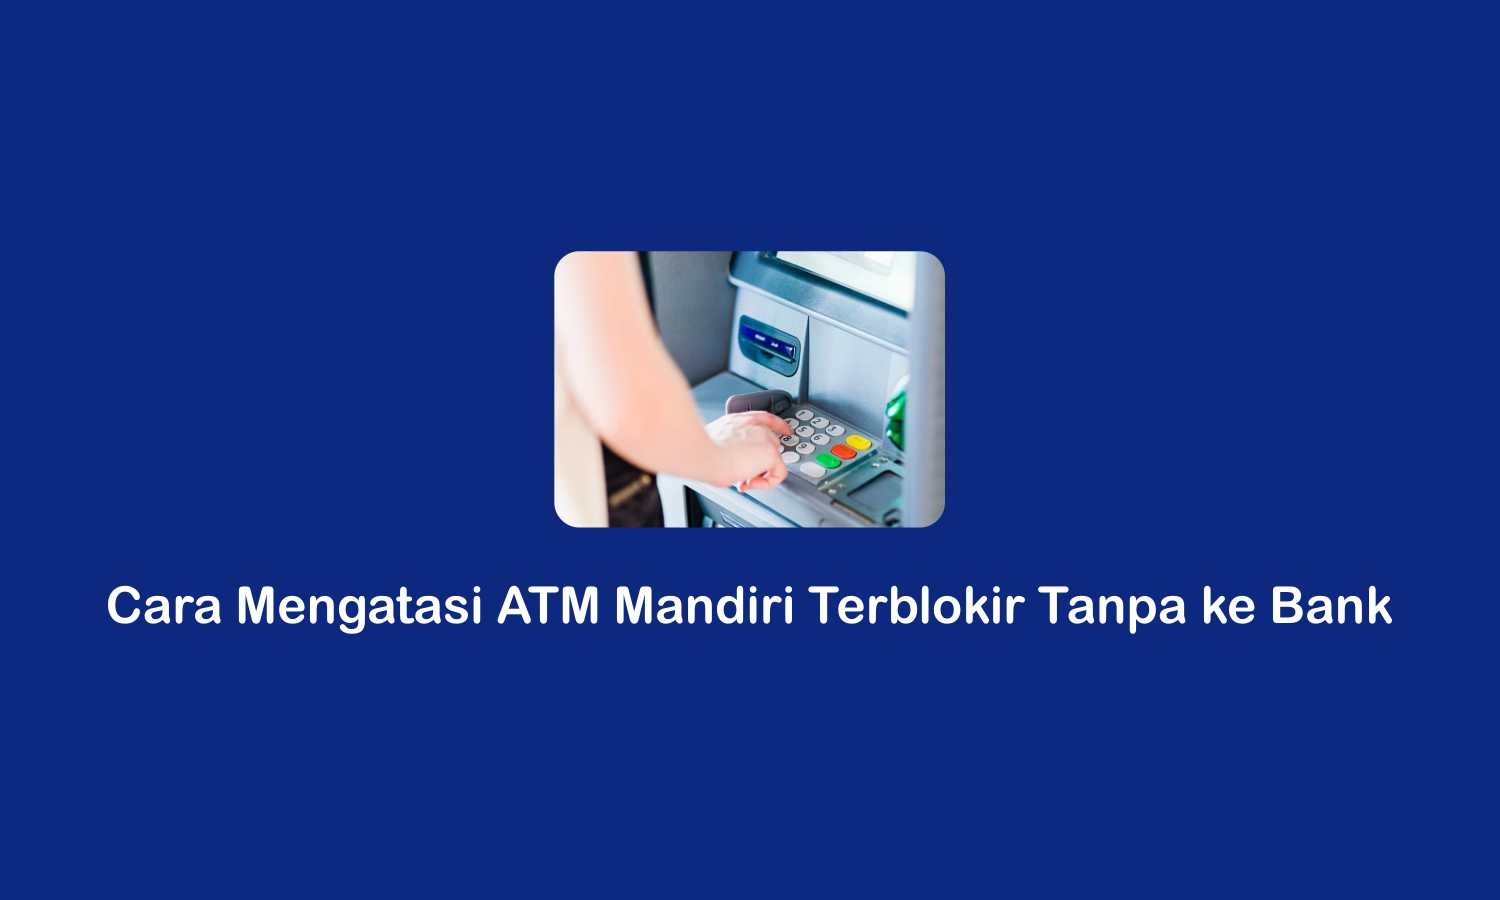 Cara Mengatasi ATM Mandiri Keblokir Tanpa ke Bank